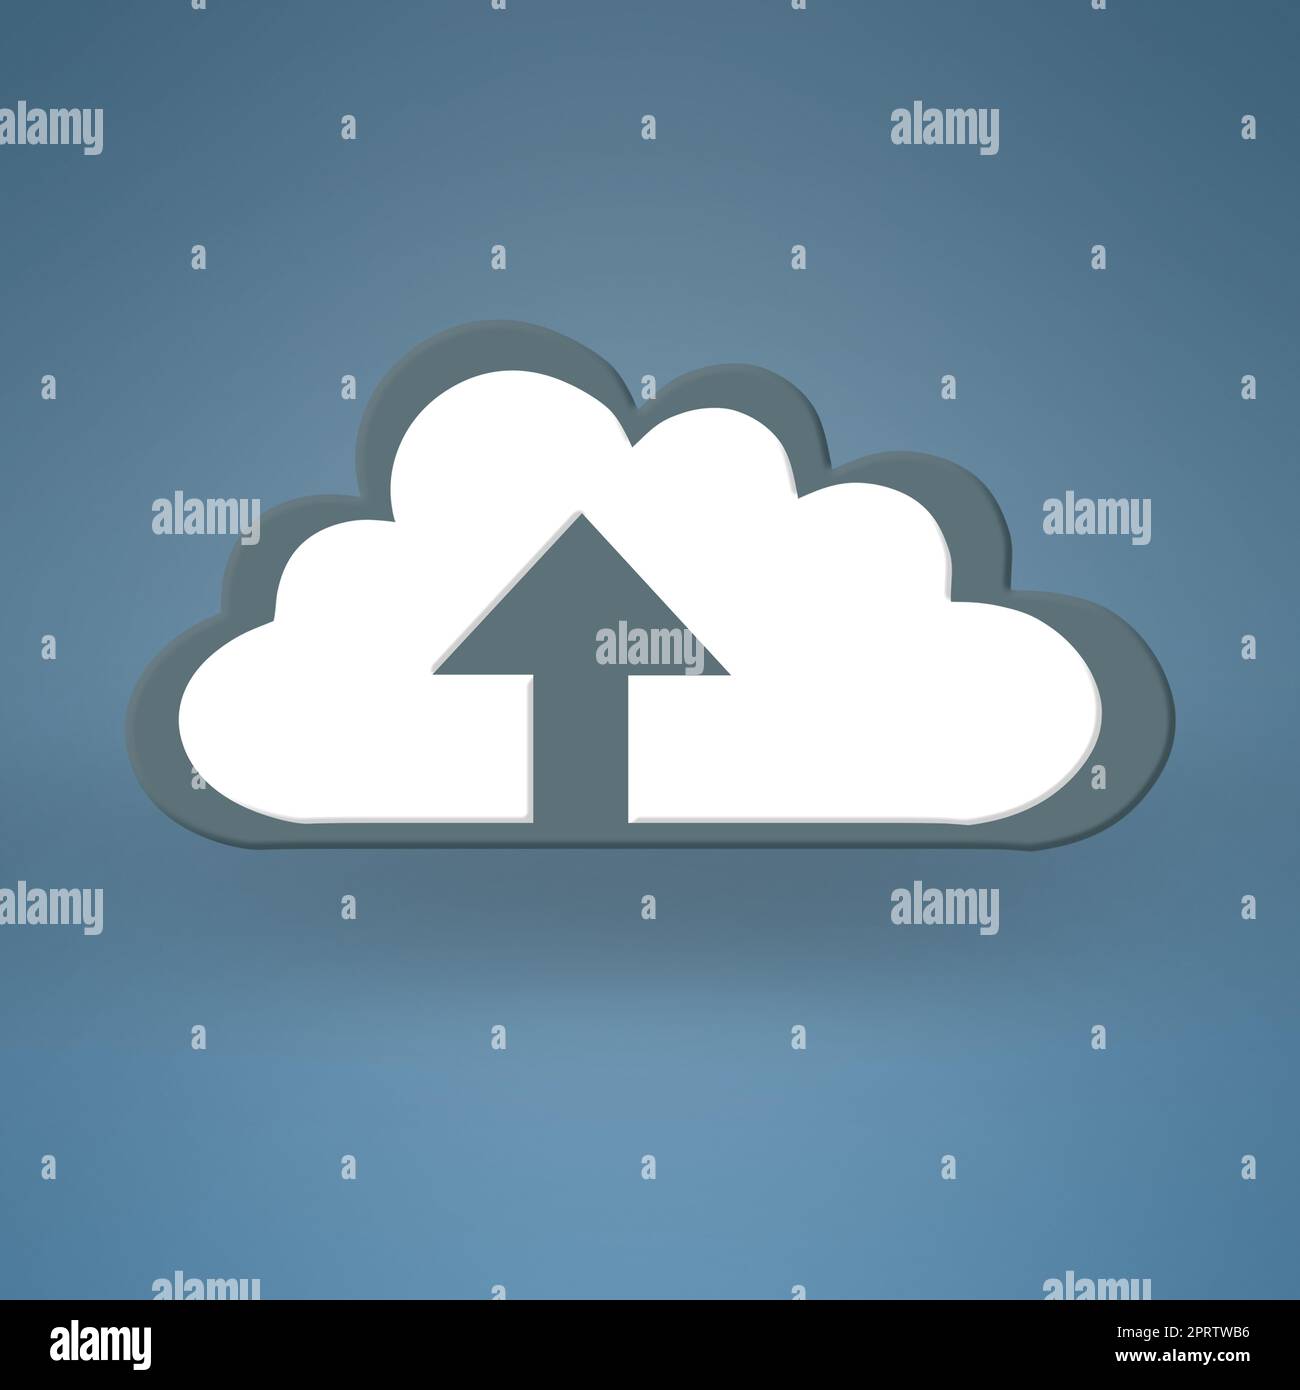 Der Upload ist abgeschlossen. Konzeptuelles Bild, das modernes Cloud-Computing darstellt. Stockfoto